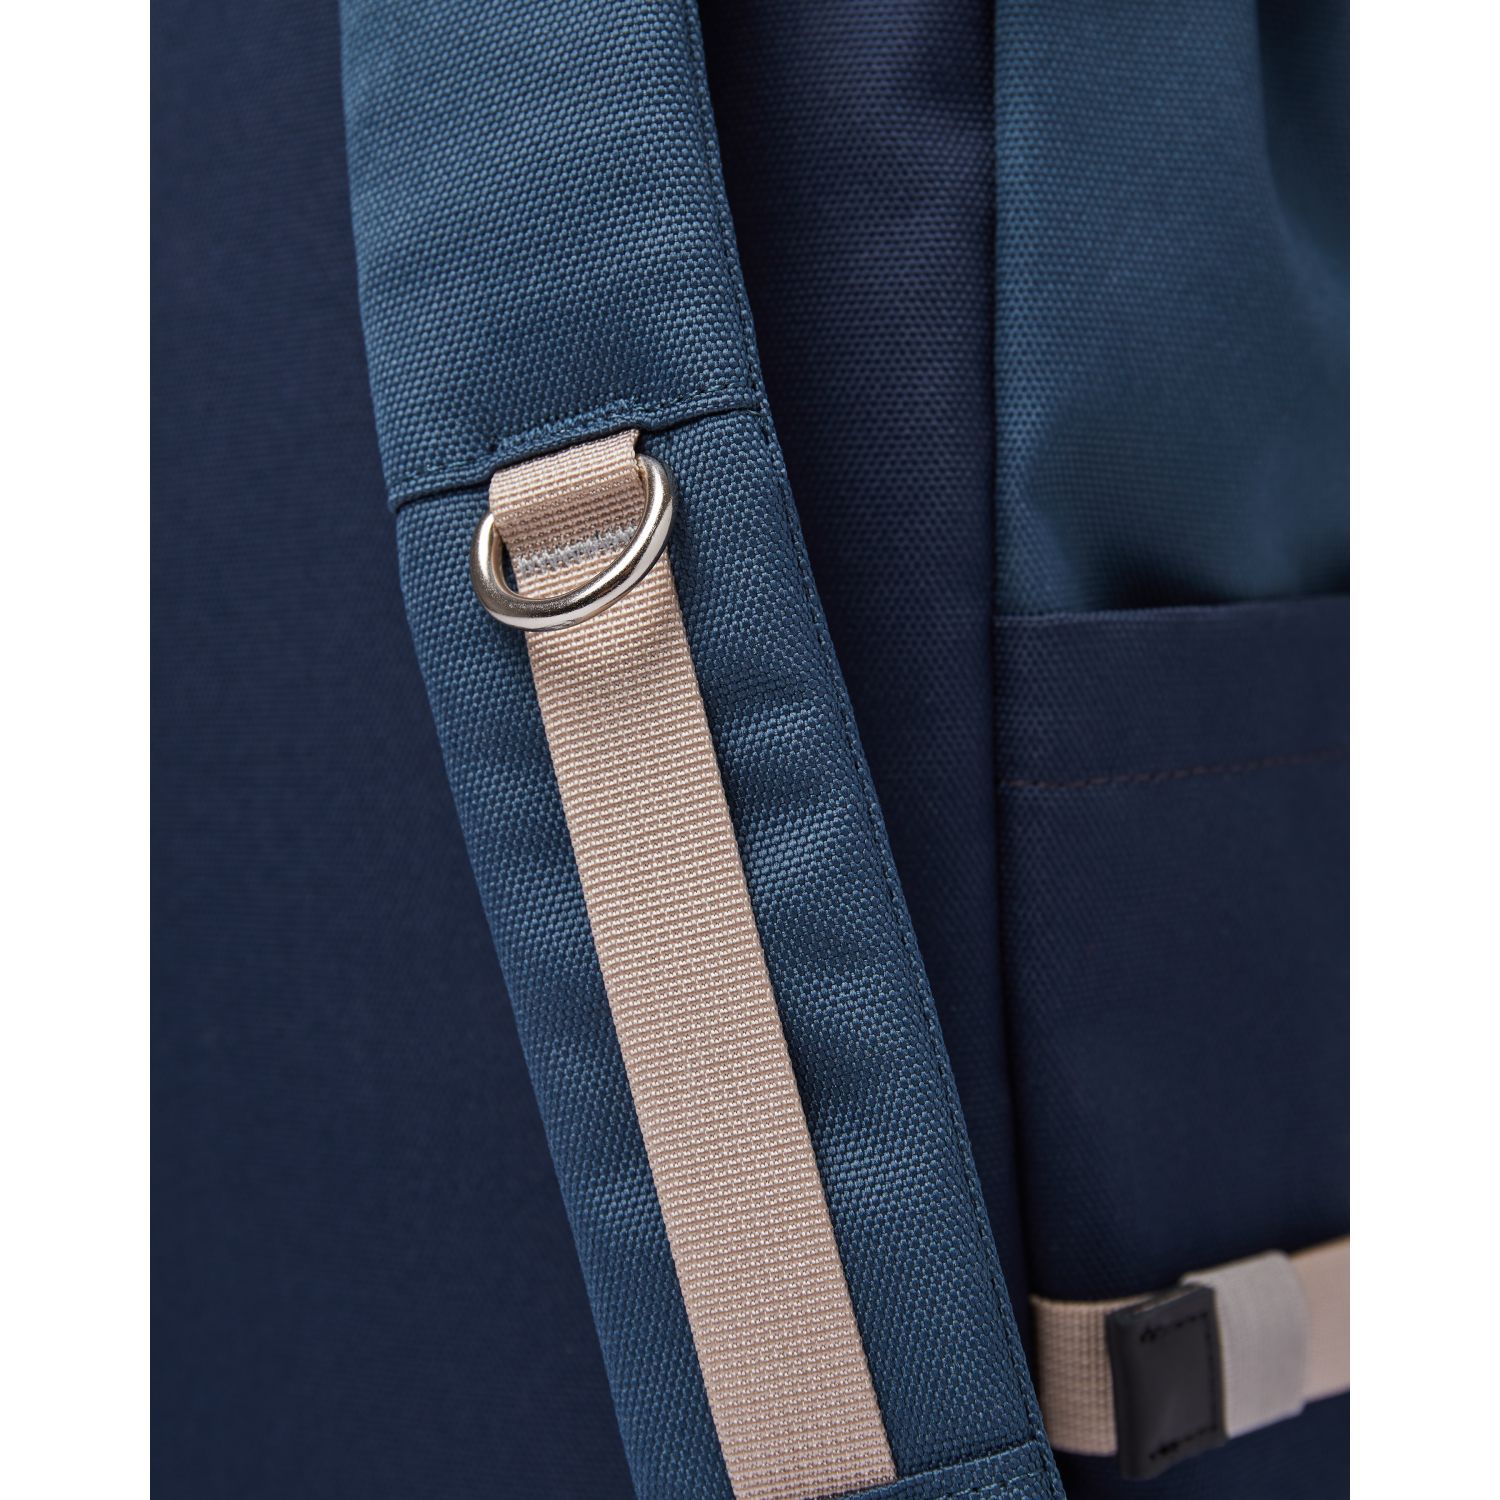 Bernt - Backpack - Steel Blue